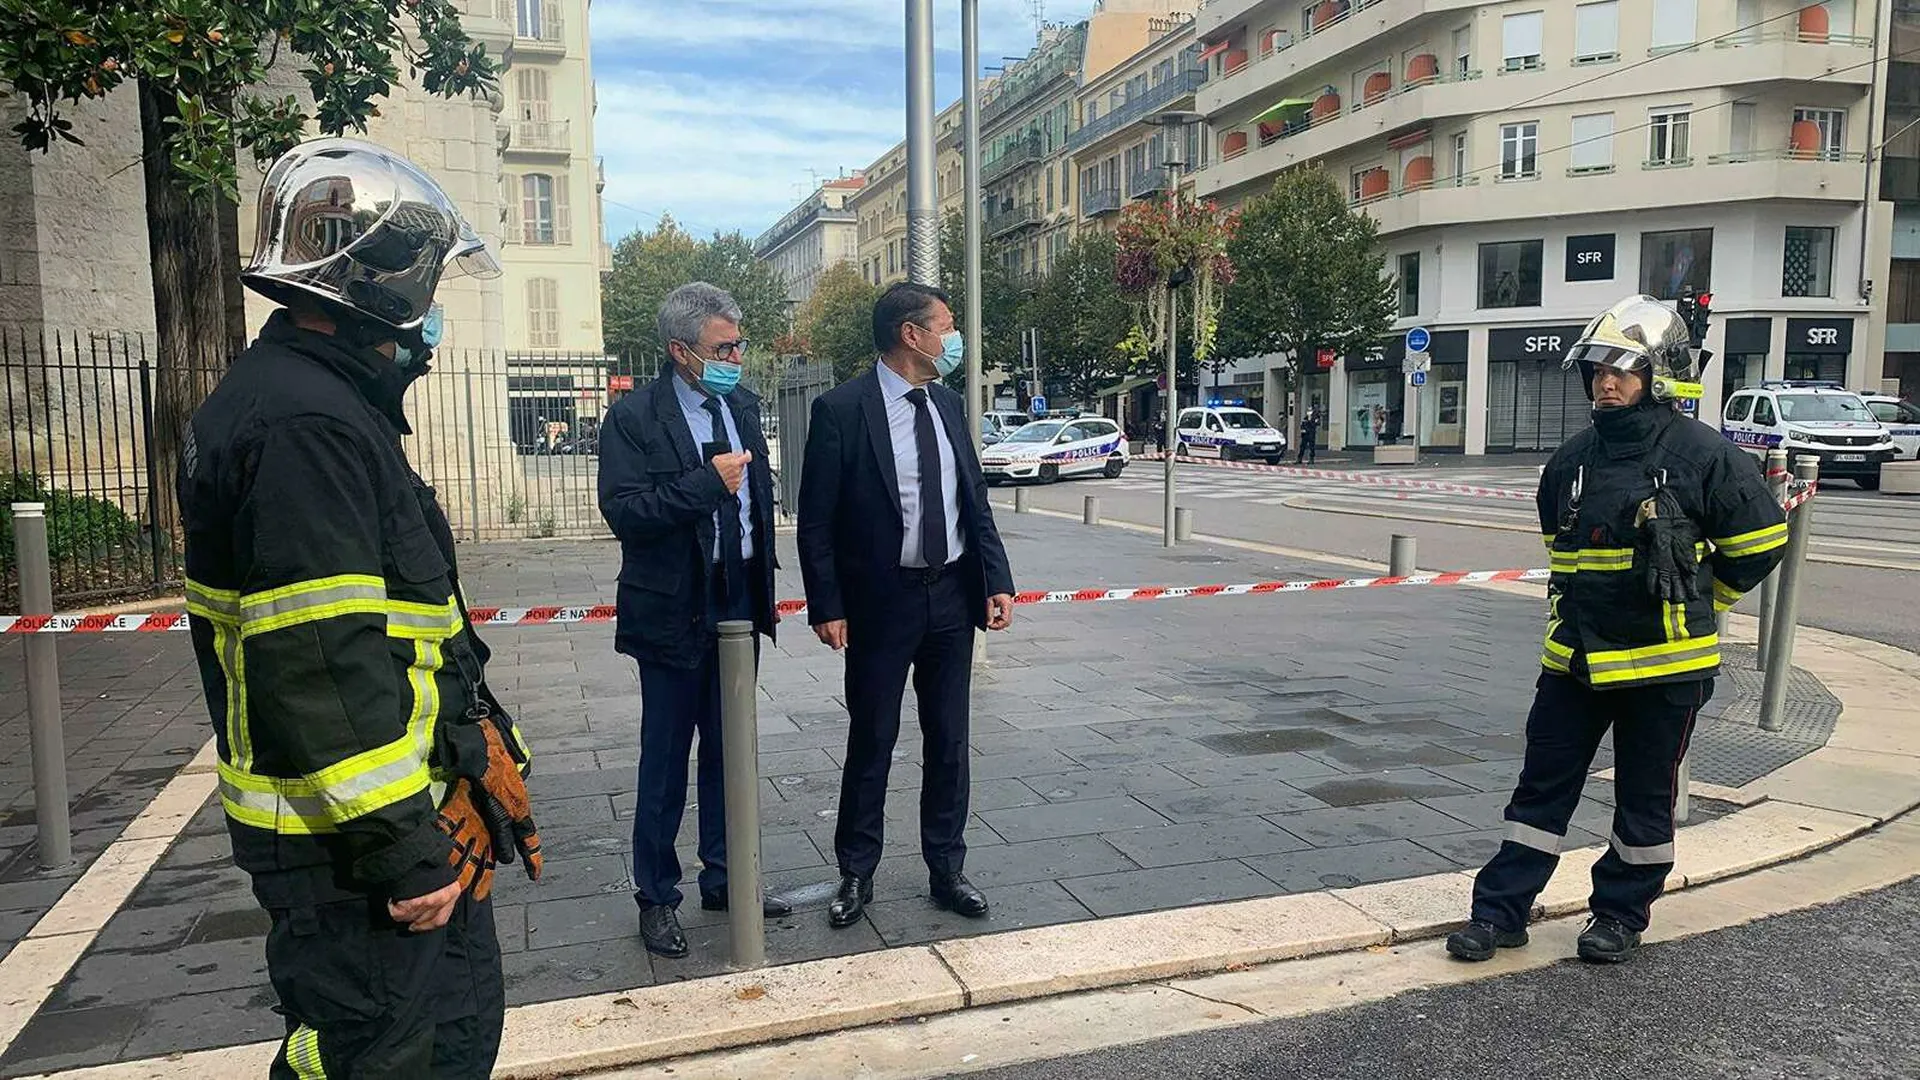 Напавший на людей в Ницце приехал в страну для теракта — МВД Франции